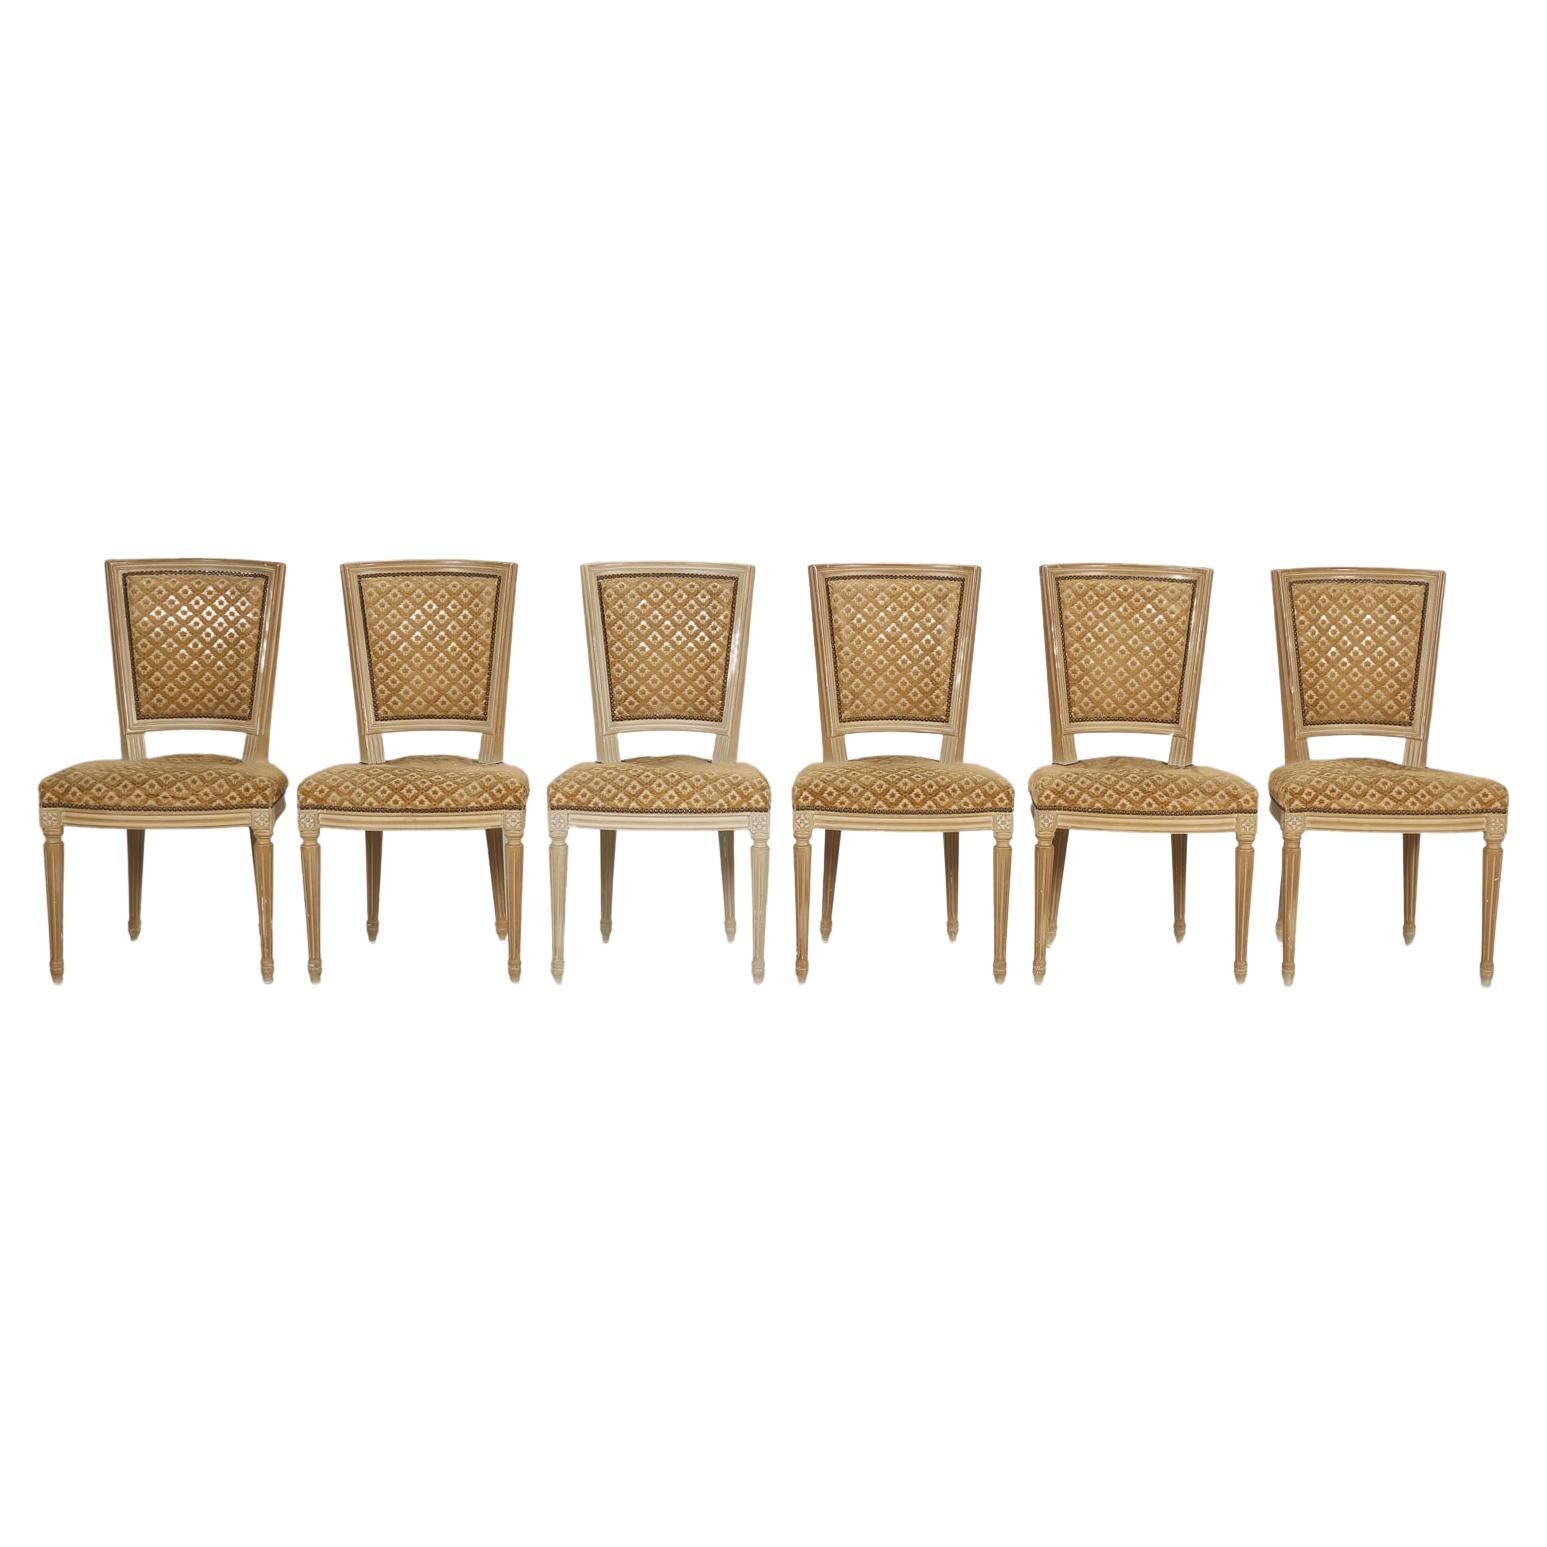 Ensemble français de (6) chaises de salle à manger de style Louis XVI peintes à l'origine, non restaurées